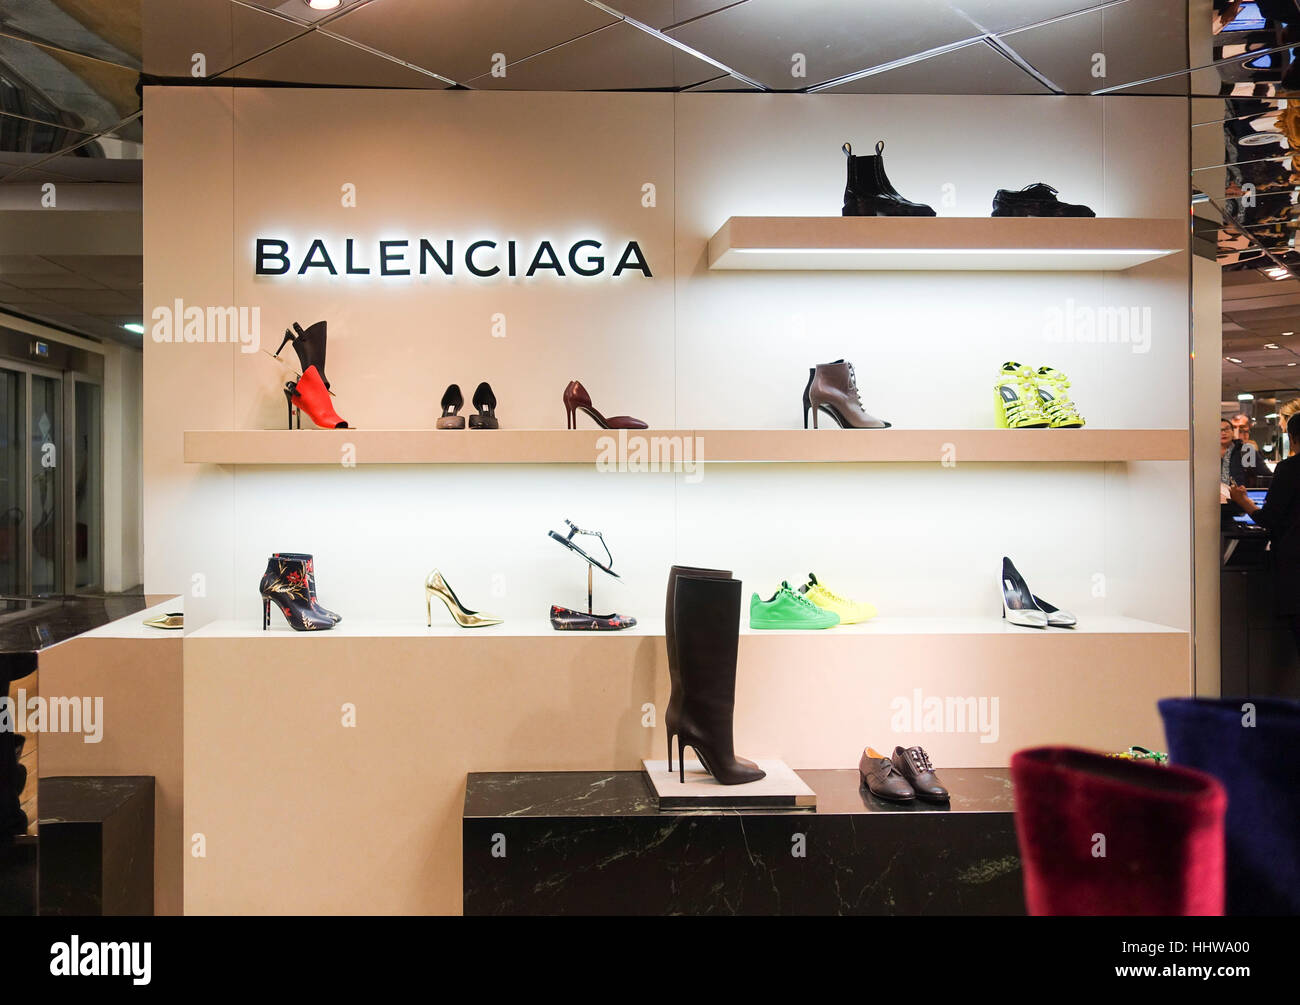 Balenciaga Shoes High Resolution Stock 